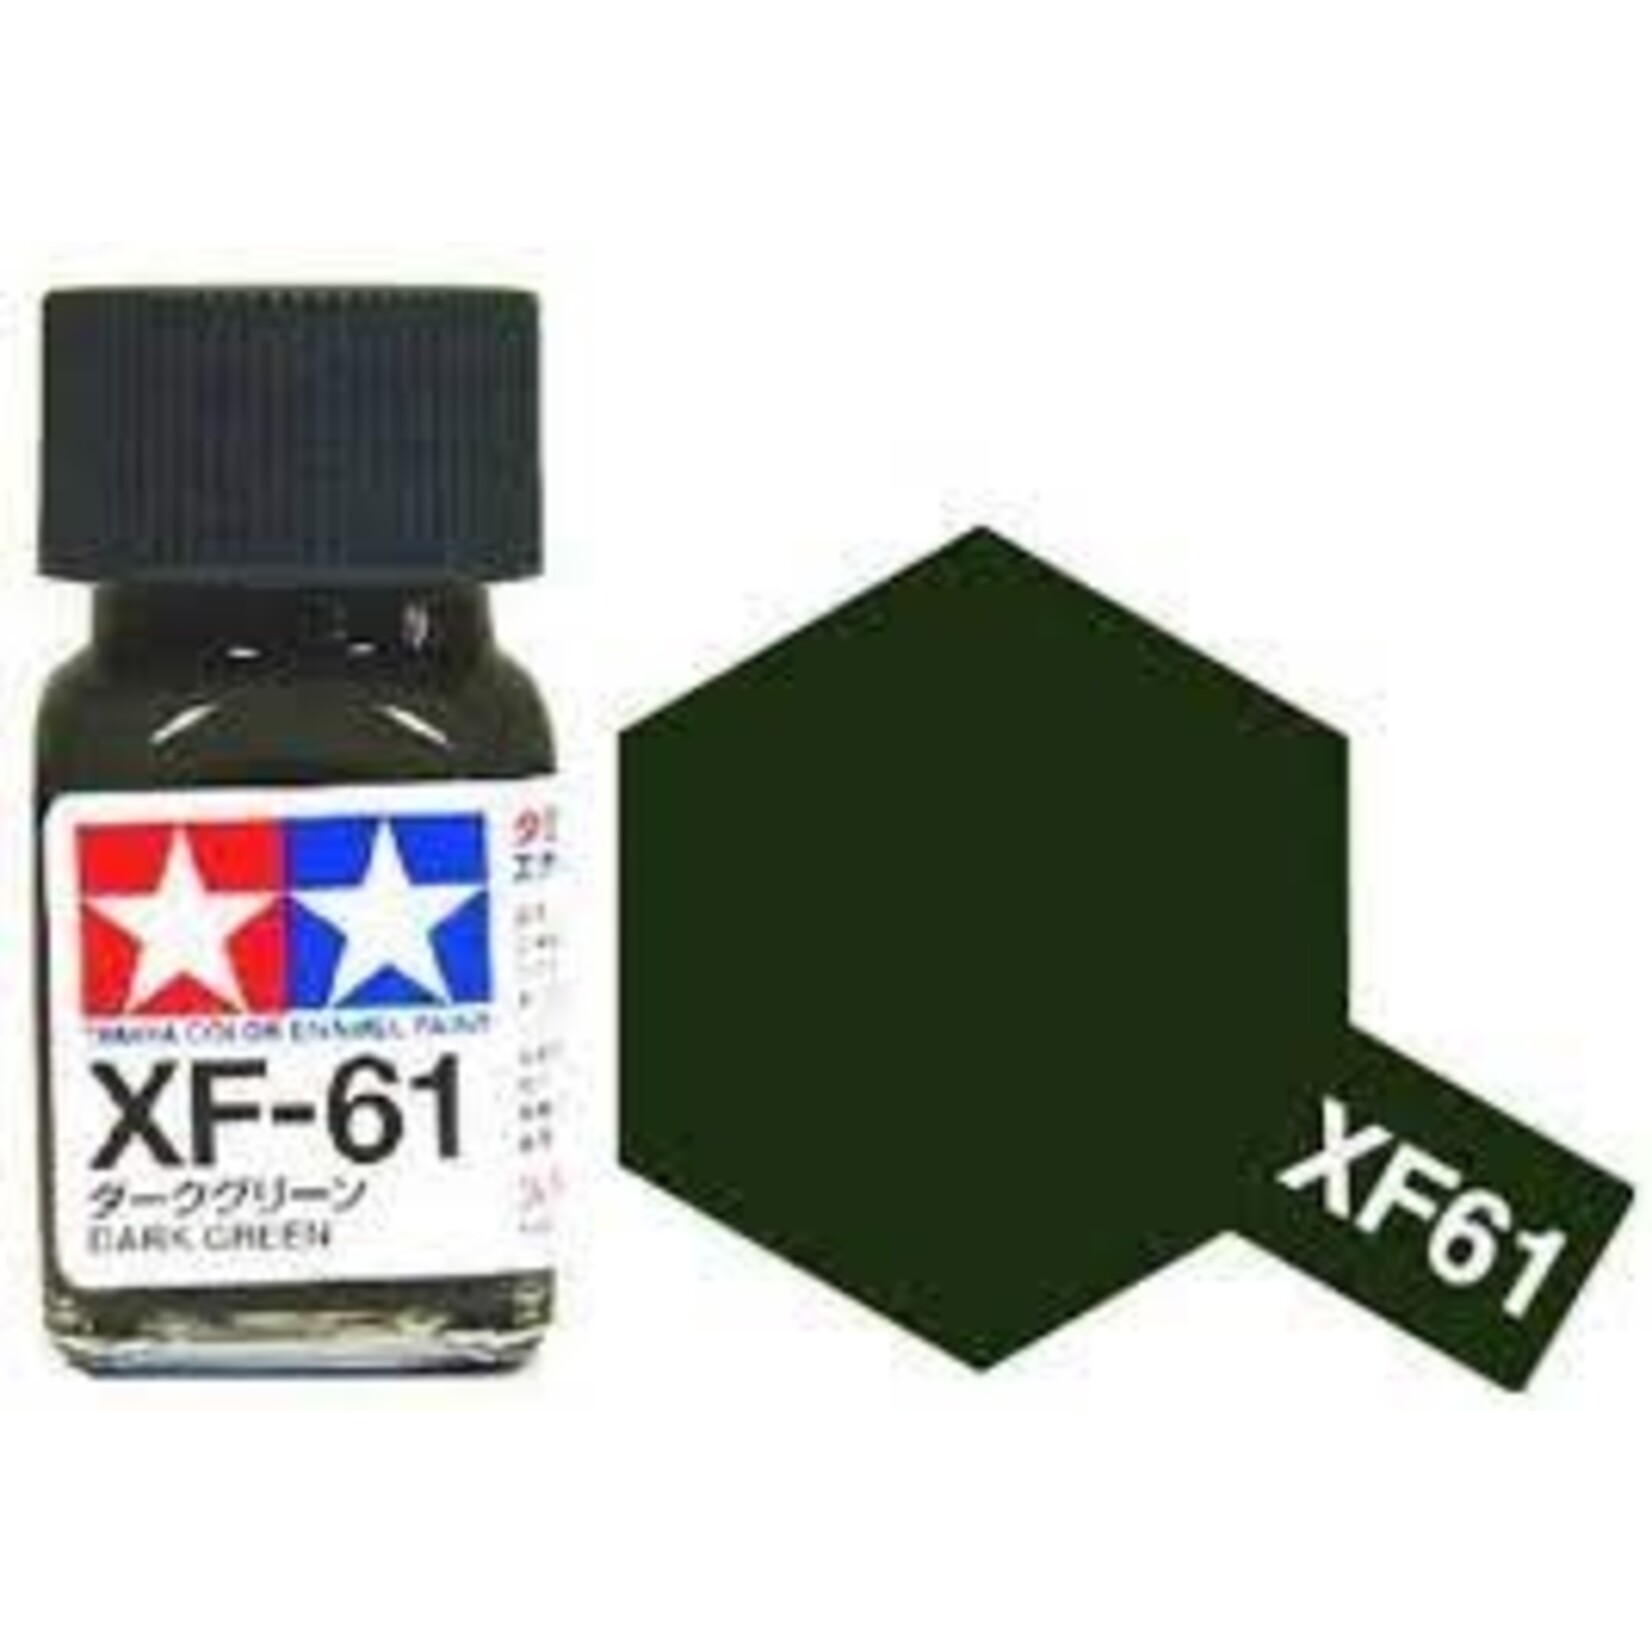 TAMEXF61 Enamel Flat Dark Green (10ml)